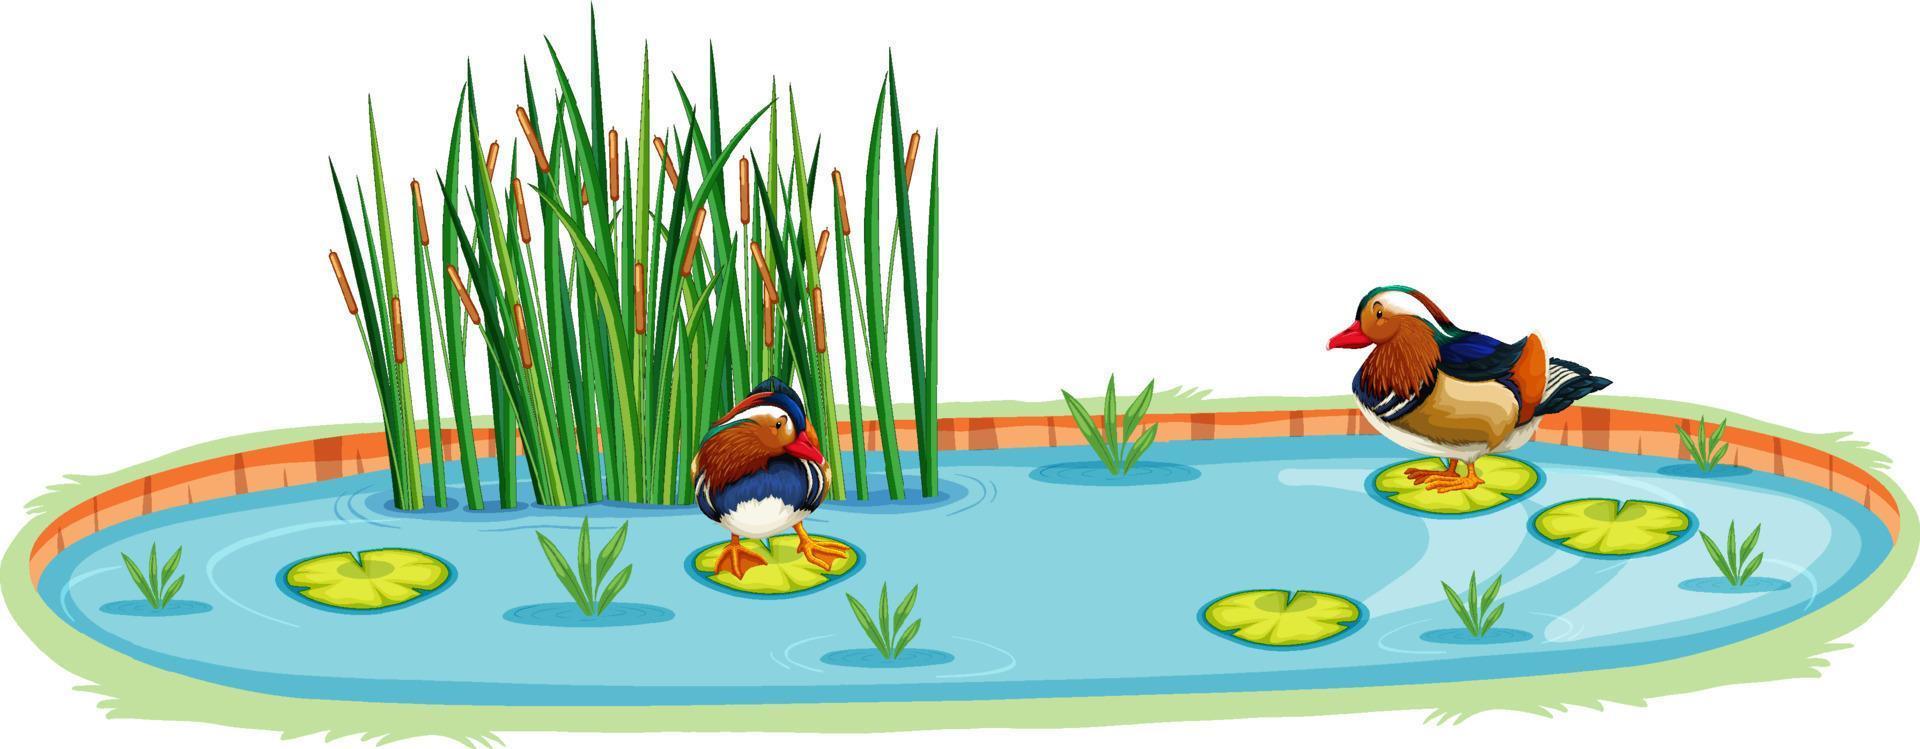 patos em uma lagoa em estilo cartoon vetor